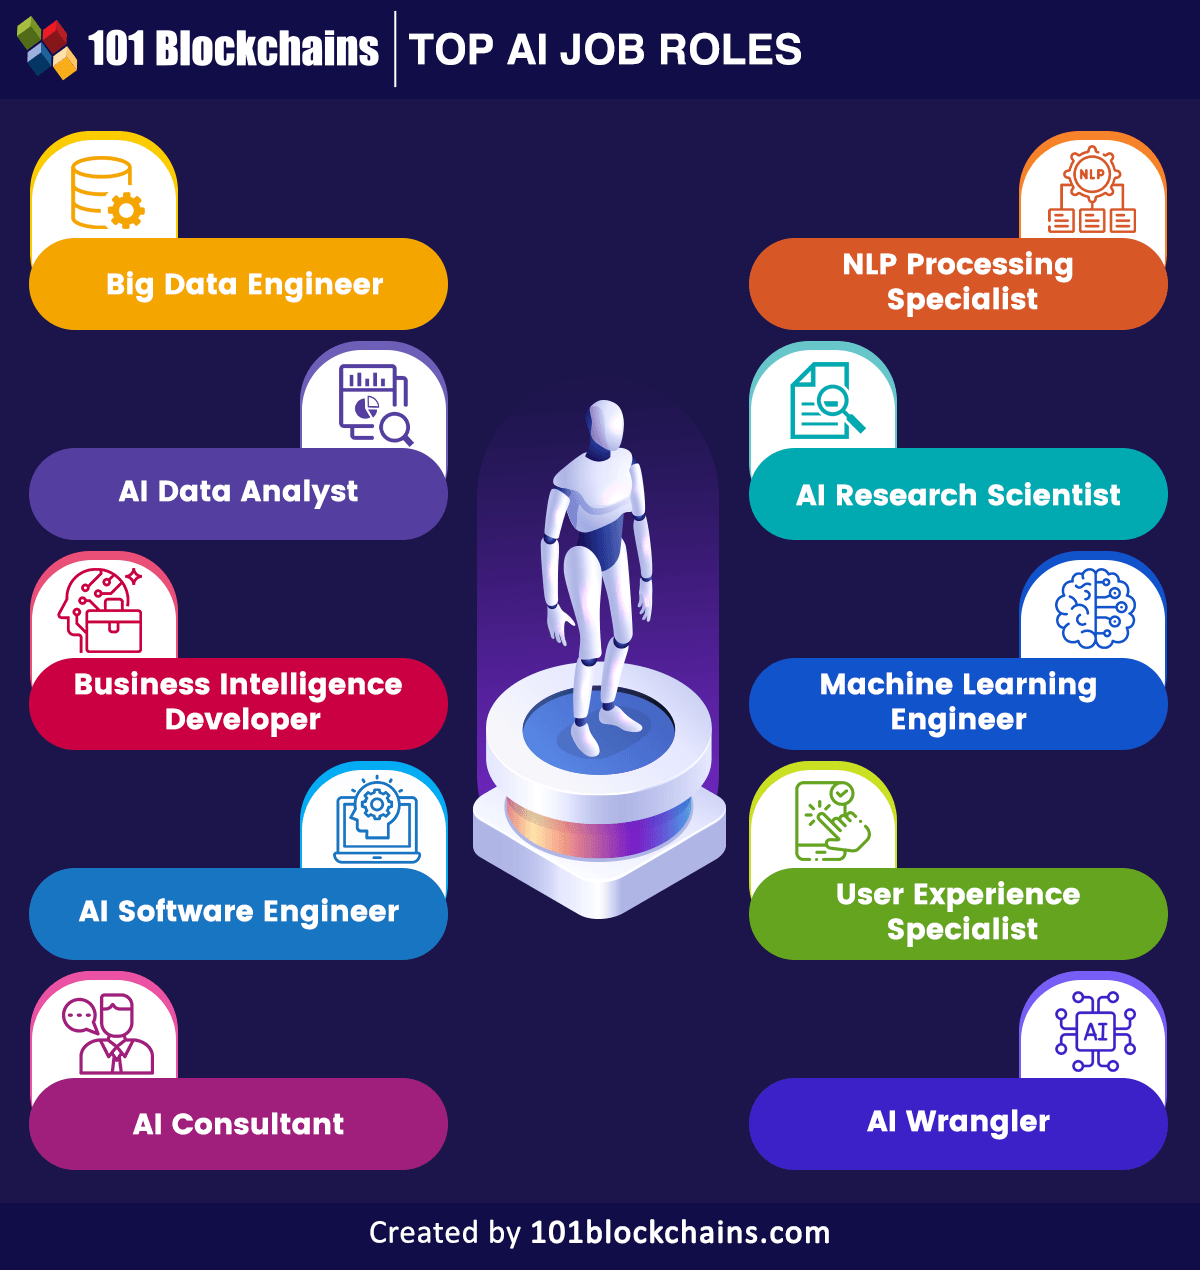 Top AI Job Roles